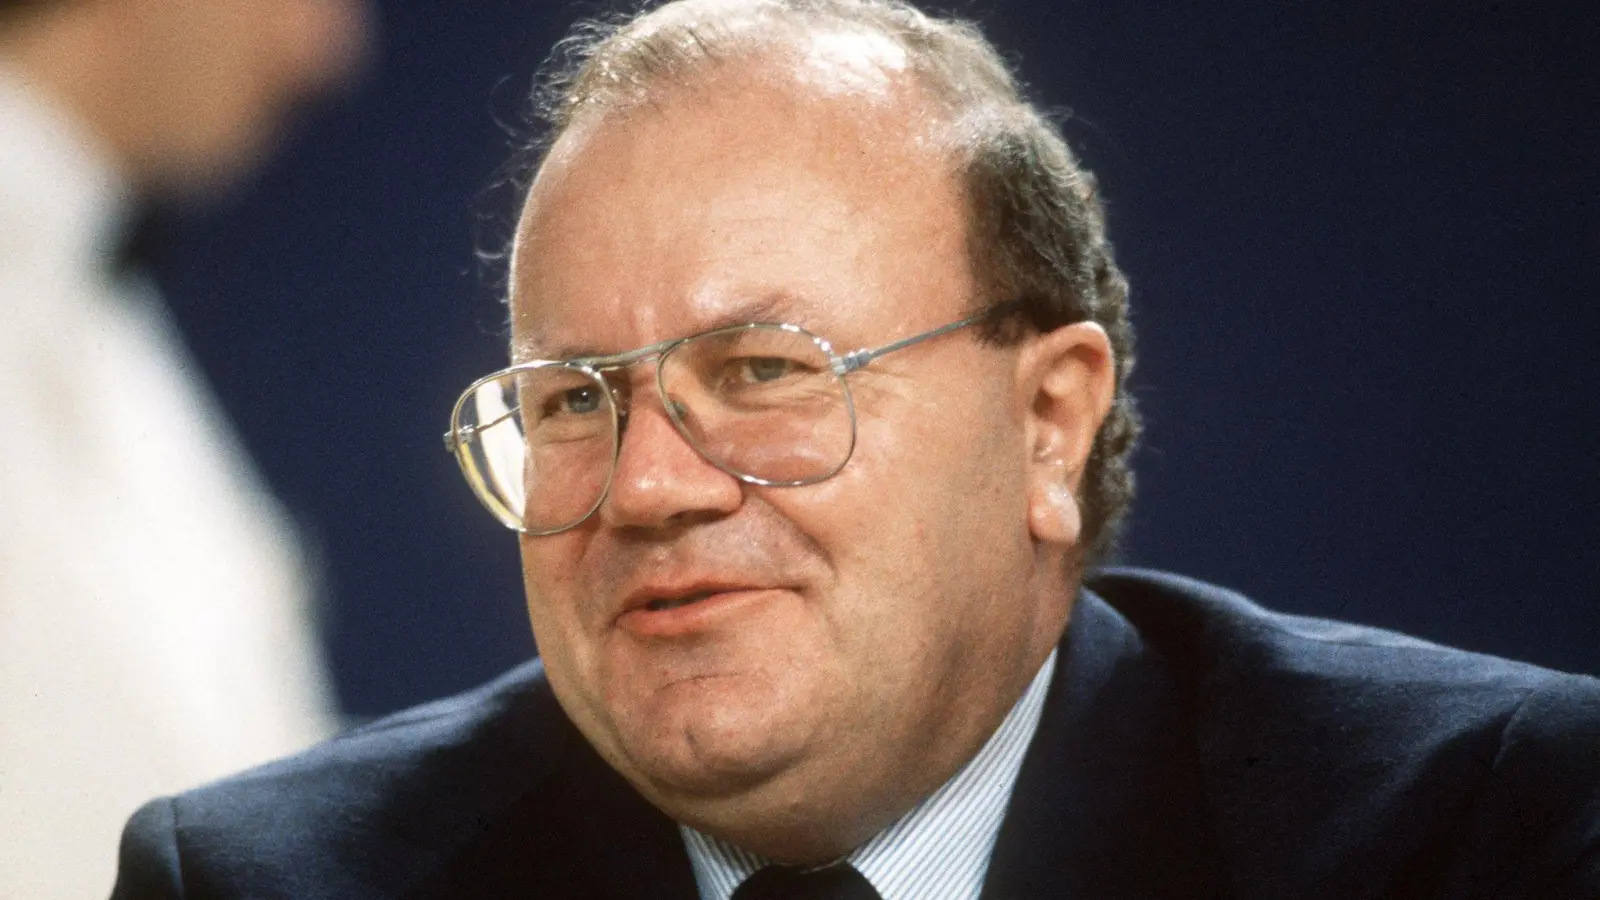 Der frühere Bundeswirtschaftsminister Martin Bangemann starb im Alter von 87 Jahren. (Foto: Jörg Schmitt/dpa)